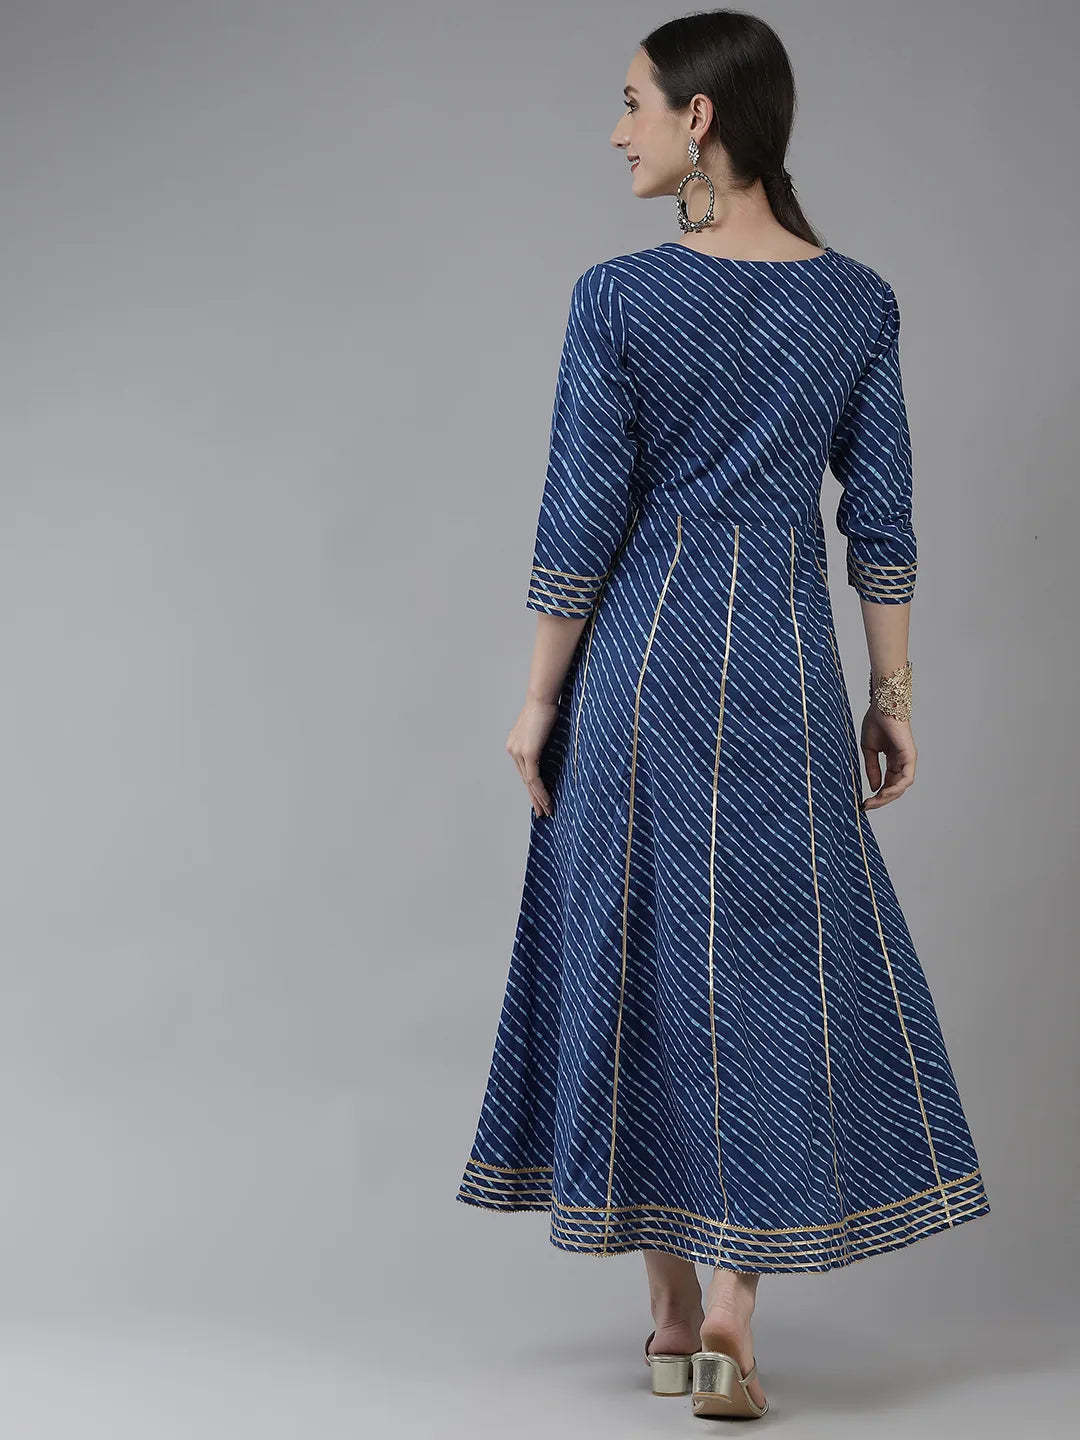 Blue Ethnic Motifs Maxi Dress-Yufta Store-9778DRSBLS